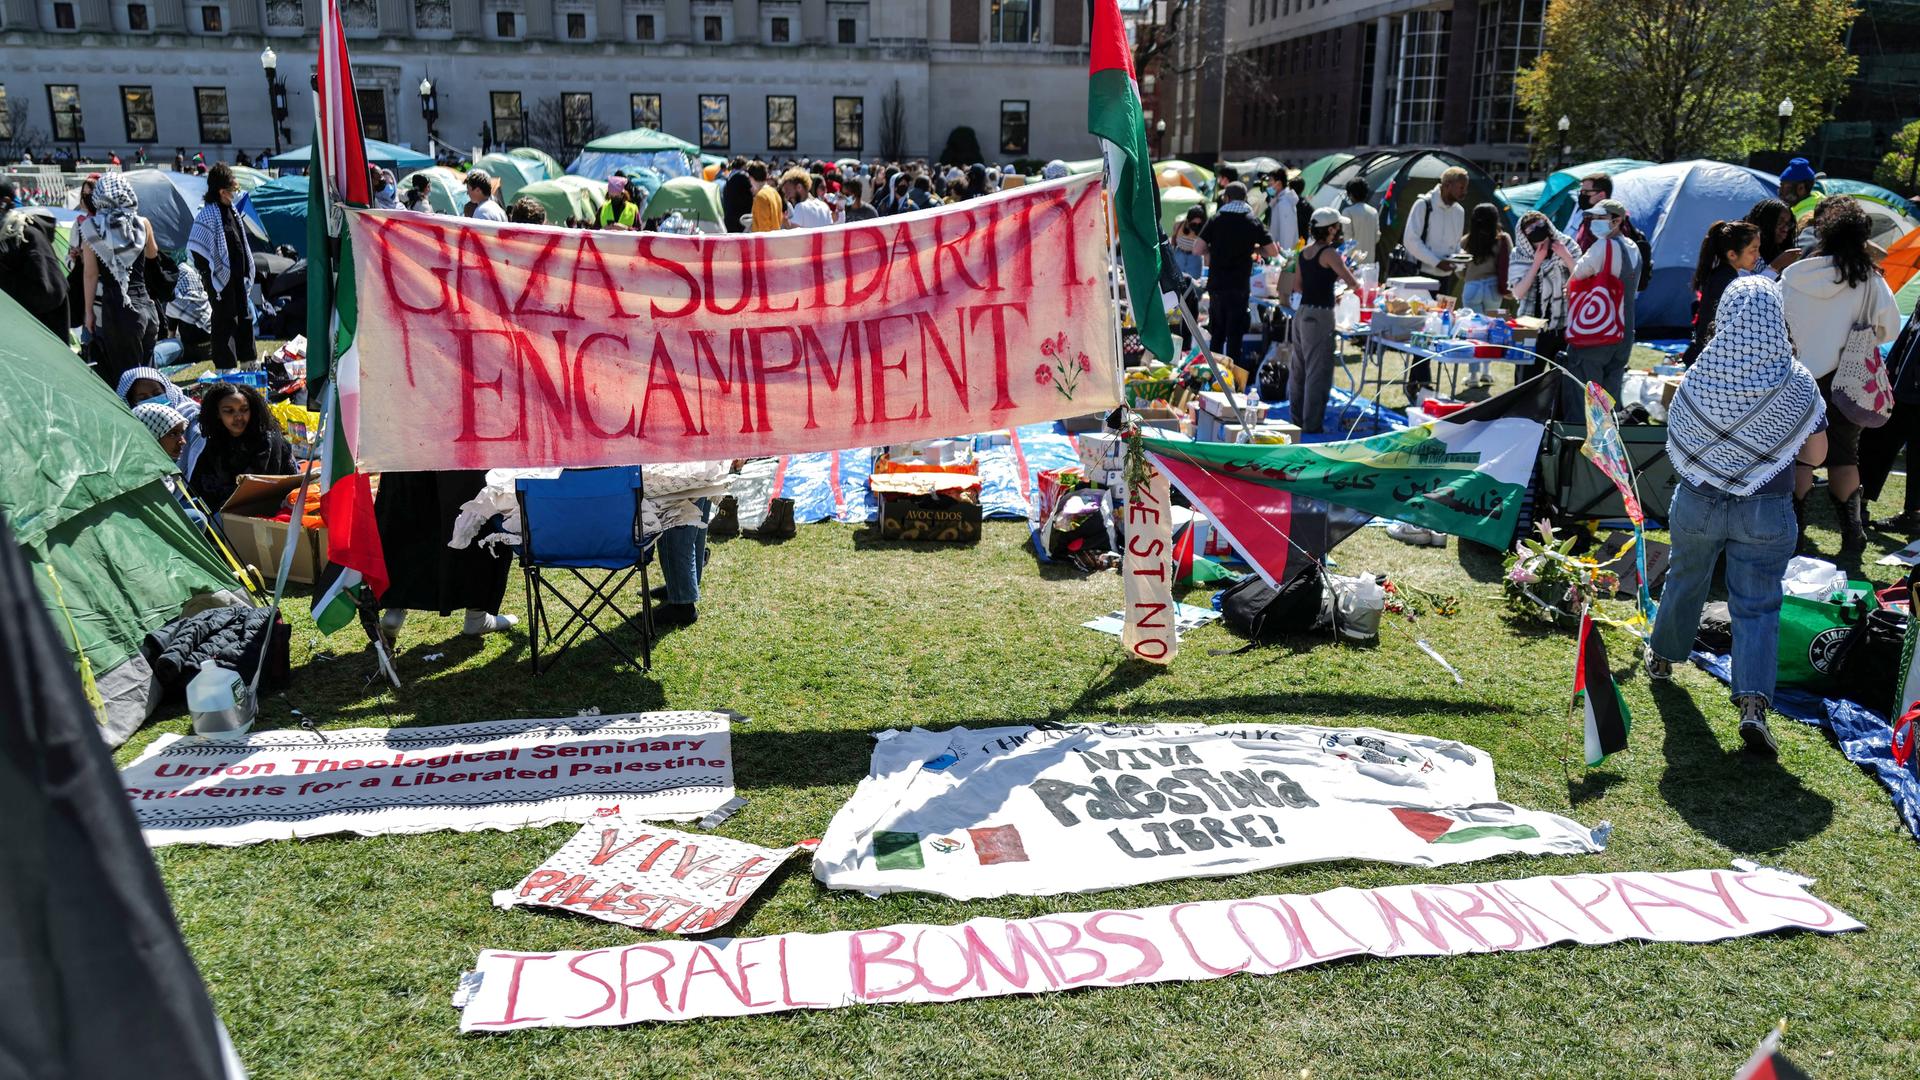 Auf einem Rasen liegen Plakate, Demonstranten haben Zelte aufgestellt.